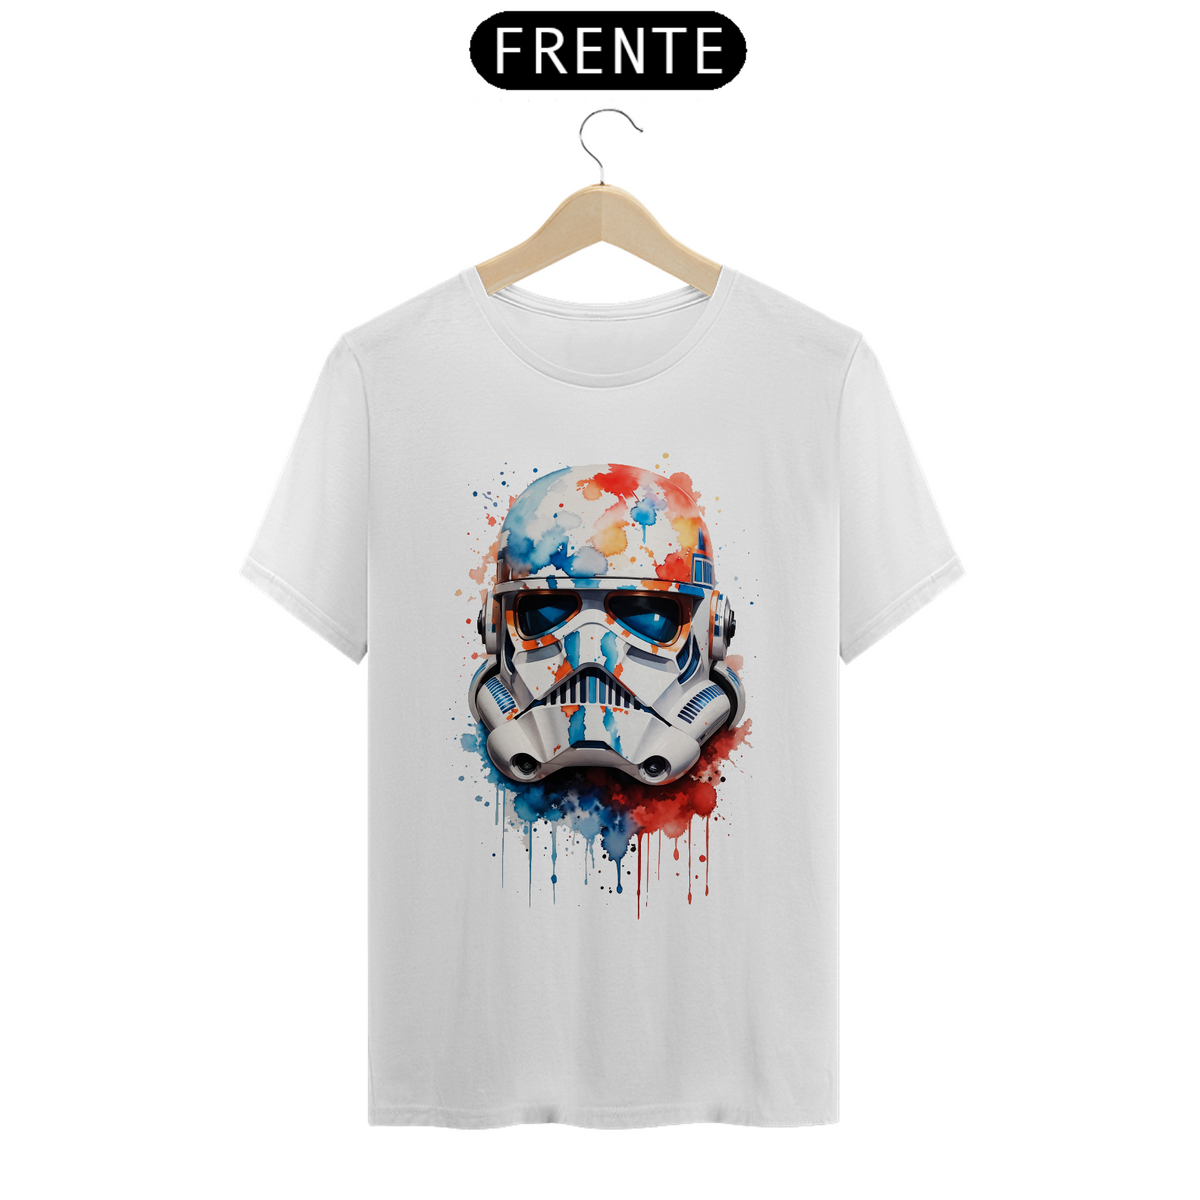 Nome do produto: Camiseta - Stormtrooper aquarela